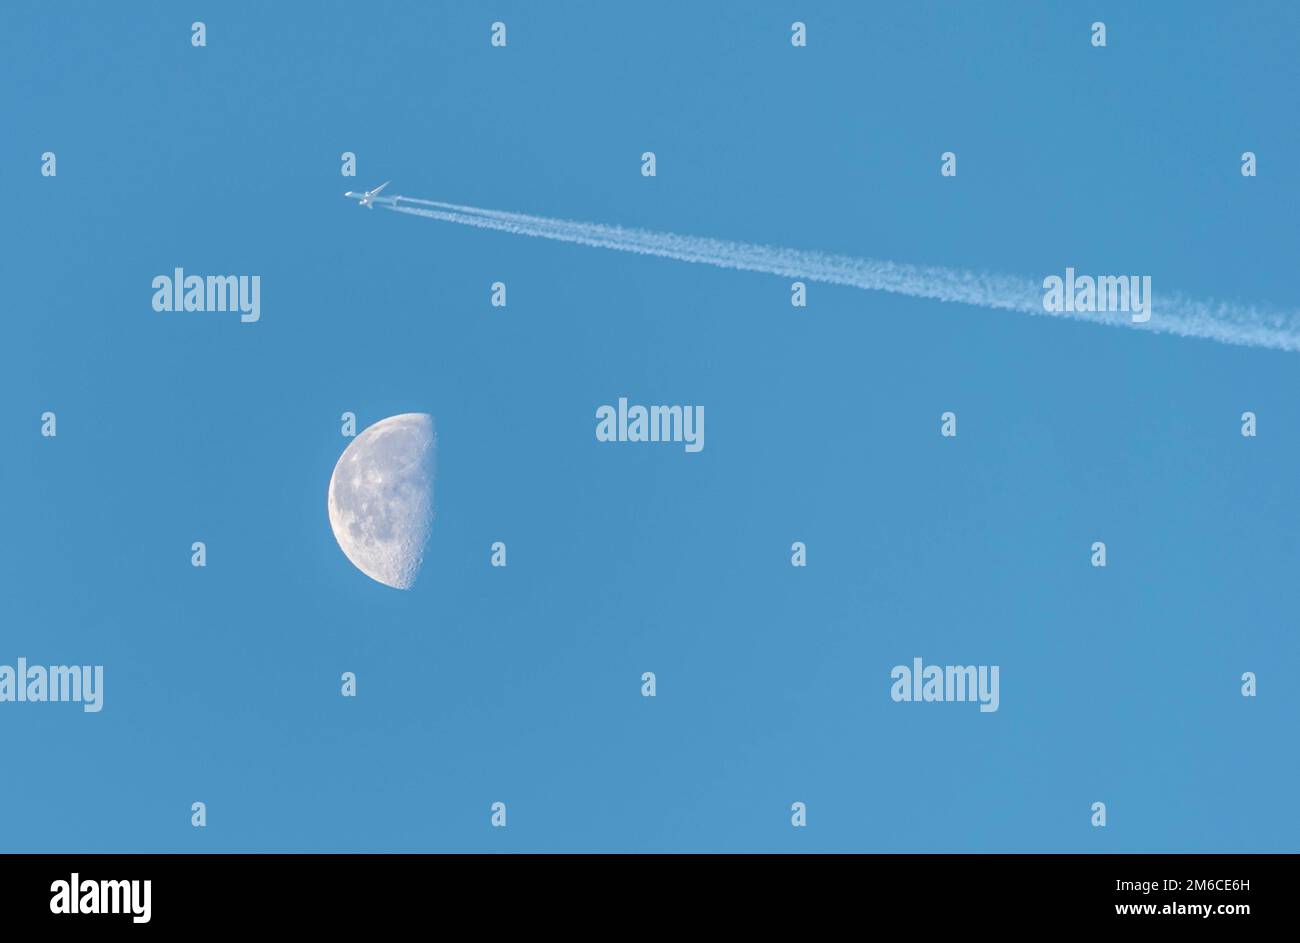 Abnehmender Mond in der Nähe von Gibbous letztes Viertel, tagsüber Geschossen mit einem Flugzeug über den Mond. Stockfoto